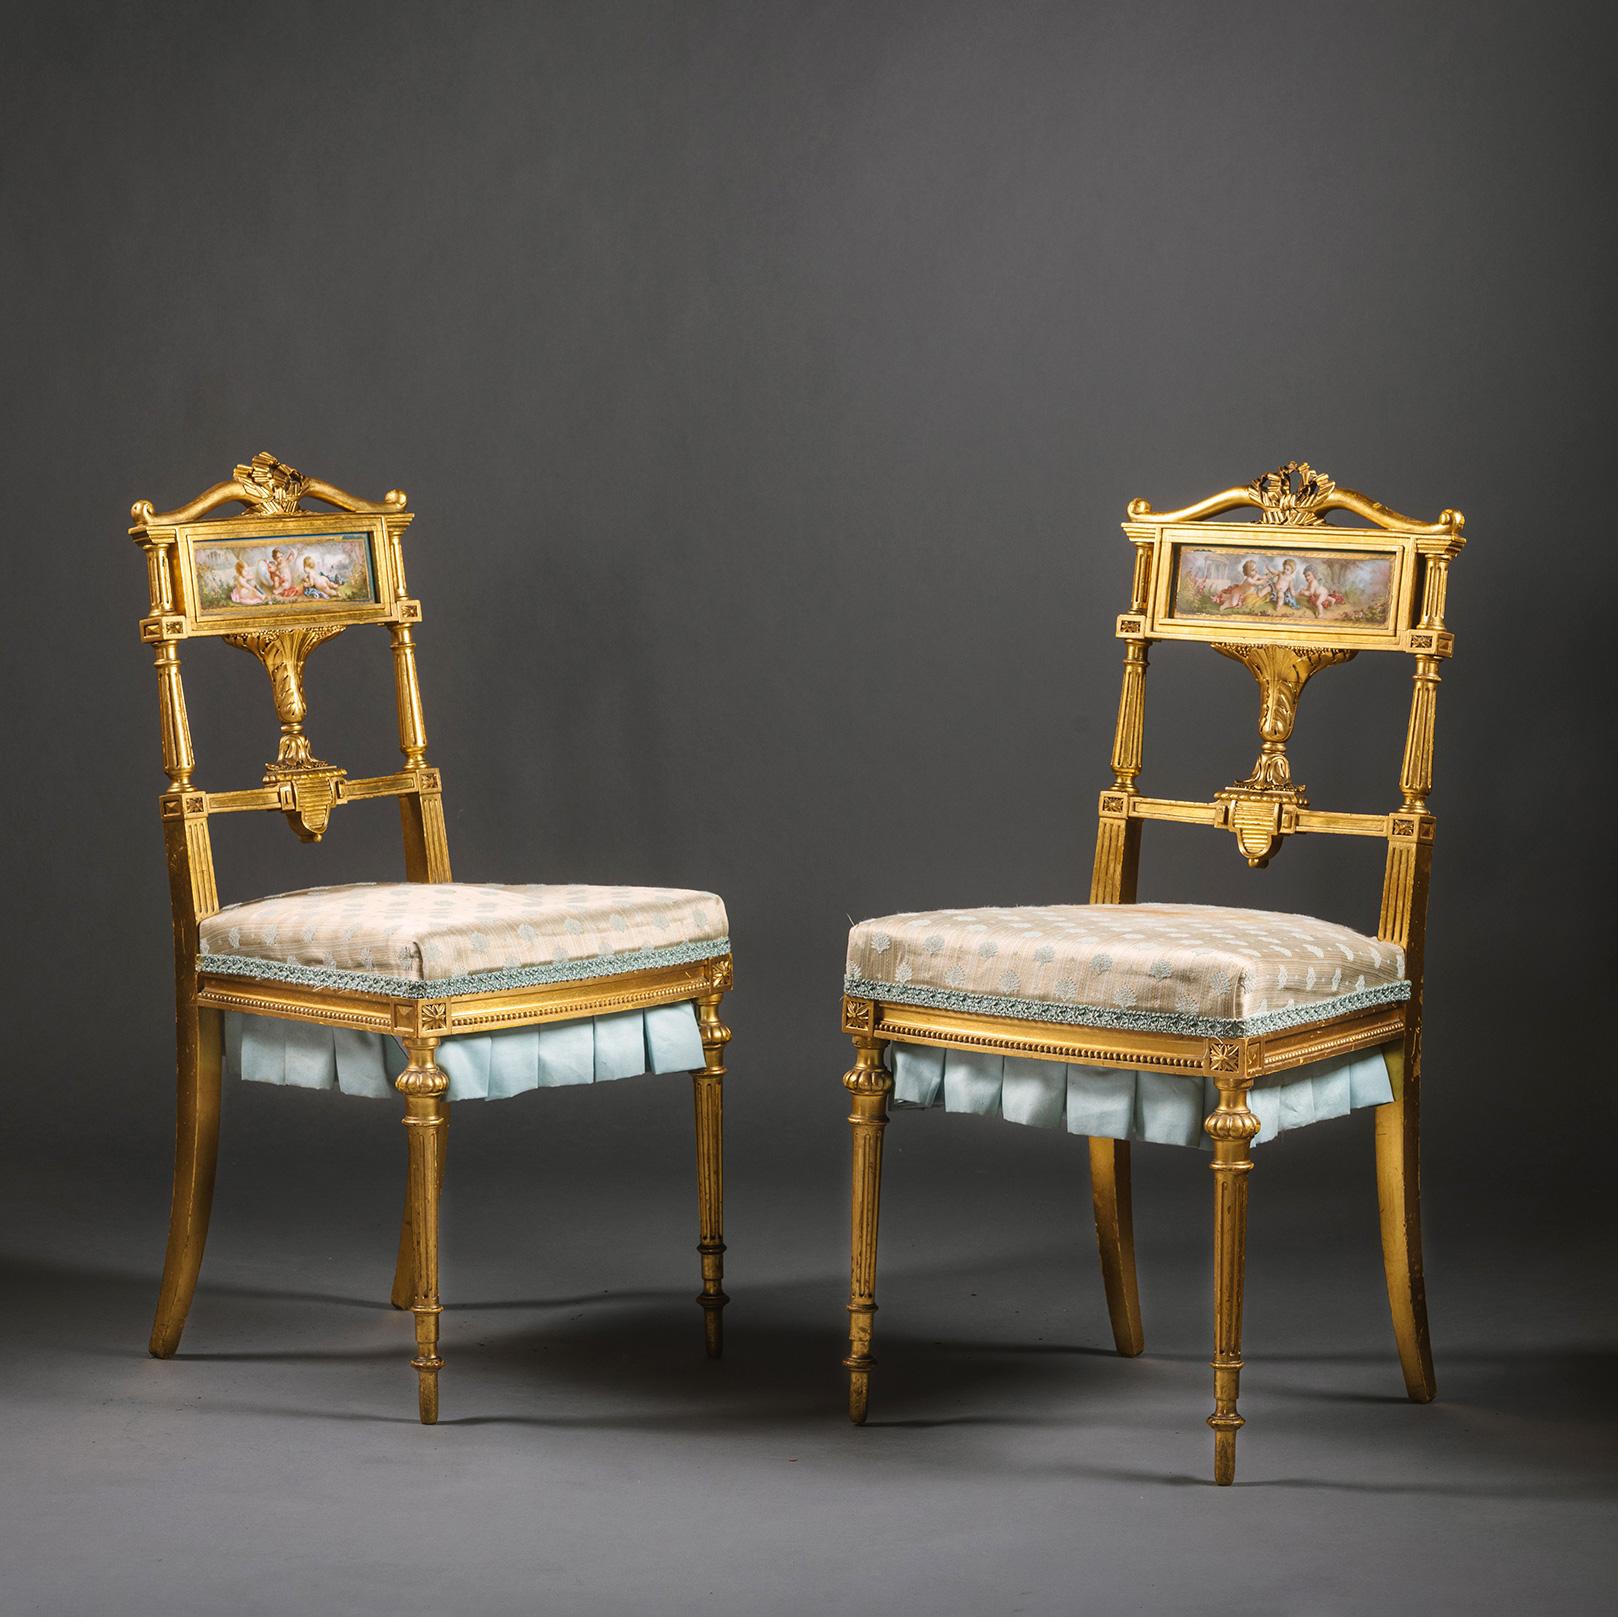 Ein Paar Salonstühle oder Schlafzimmerstühle aus Giltholz im Stil Ludwigs XVI. und Porzellan im Stil von Sèvres

Diese charmanten Stühle sind fein geschnitzt und mit Attributen der Liebe verziert. Die obere Leiste ist in Form eines Bogens